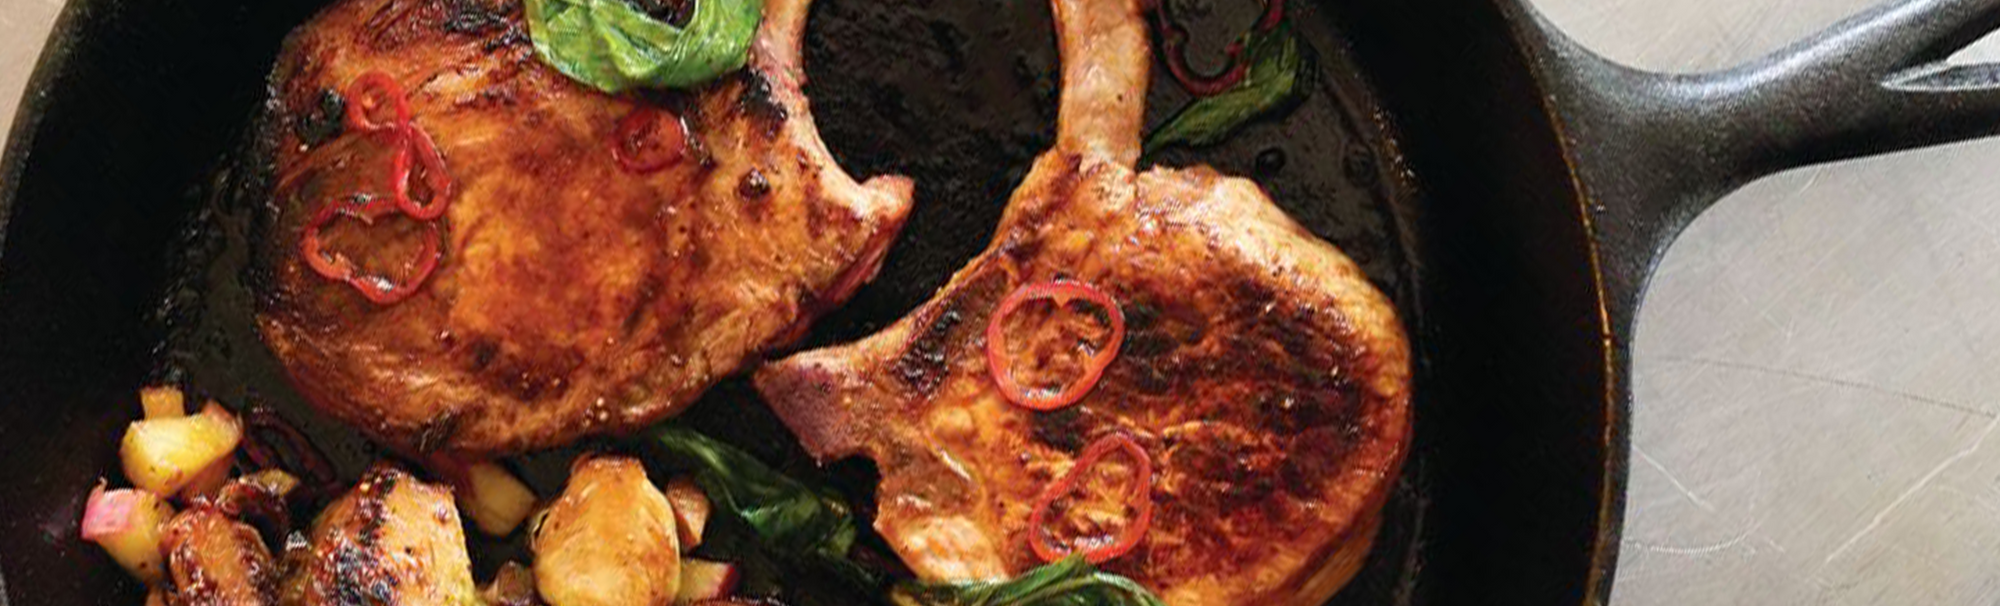 Fig Spread & Chili Glazed Pork Chops